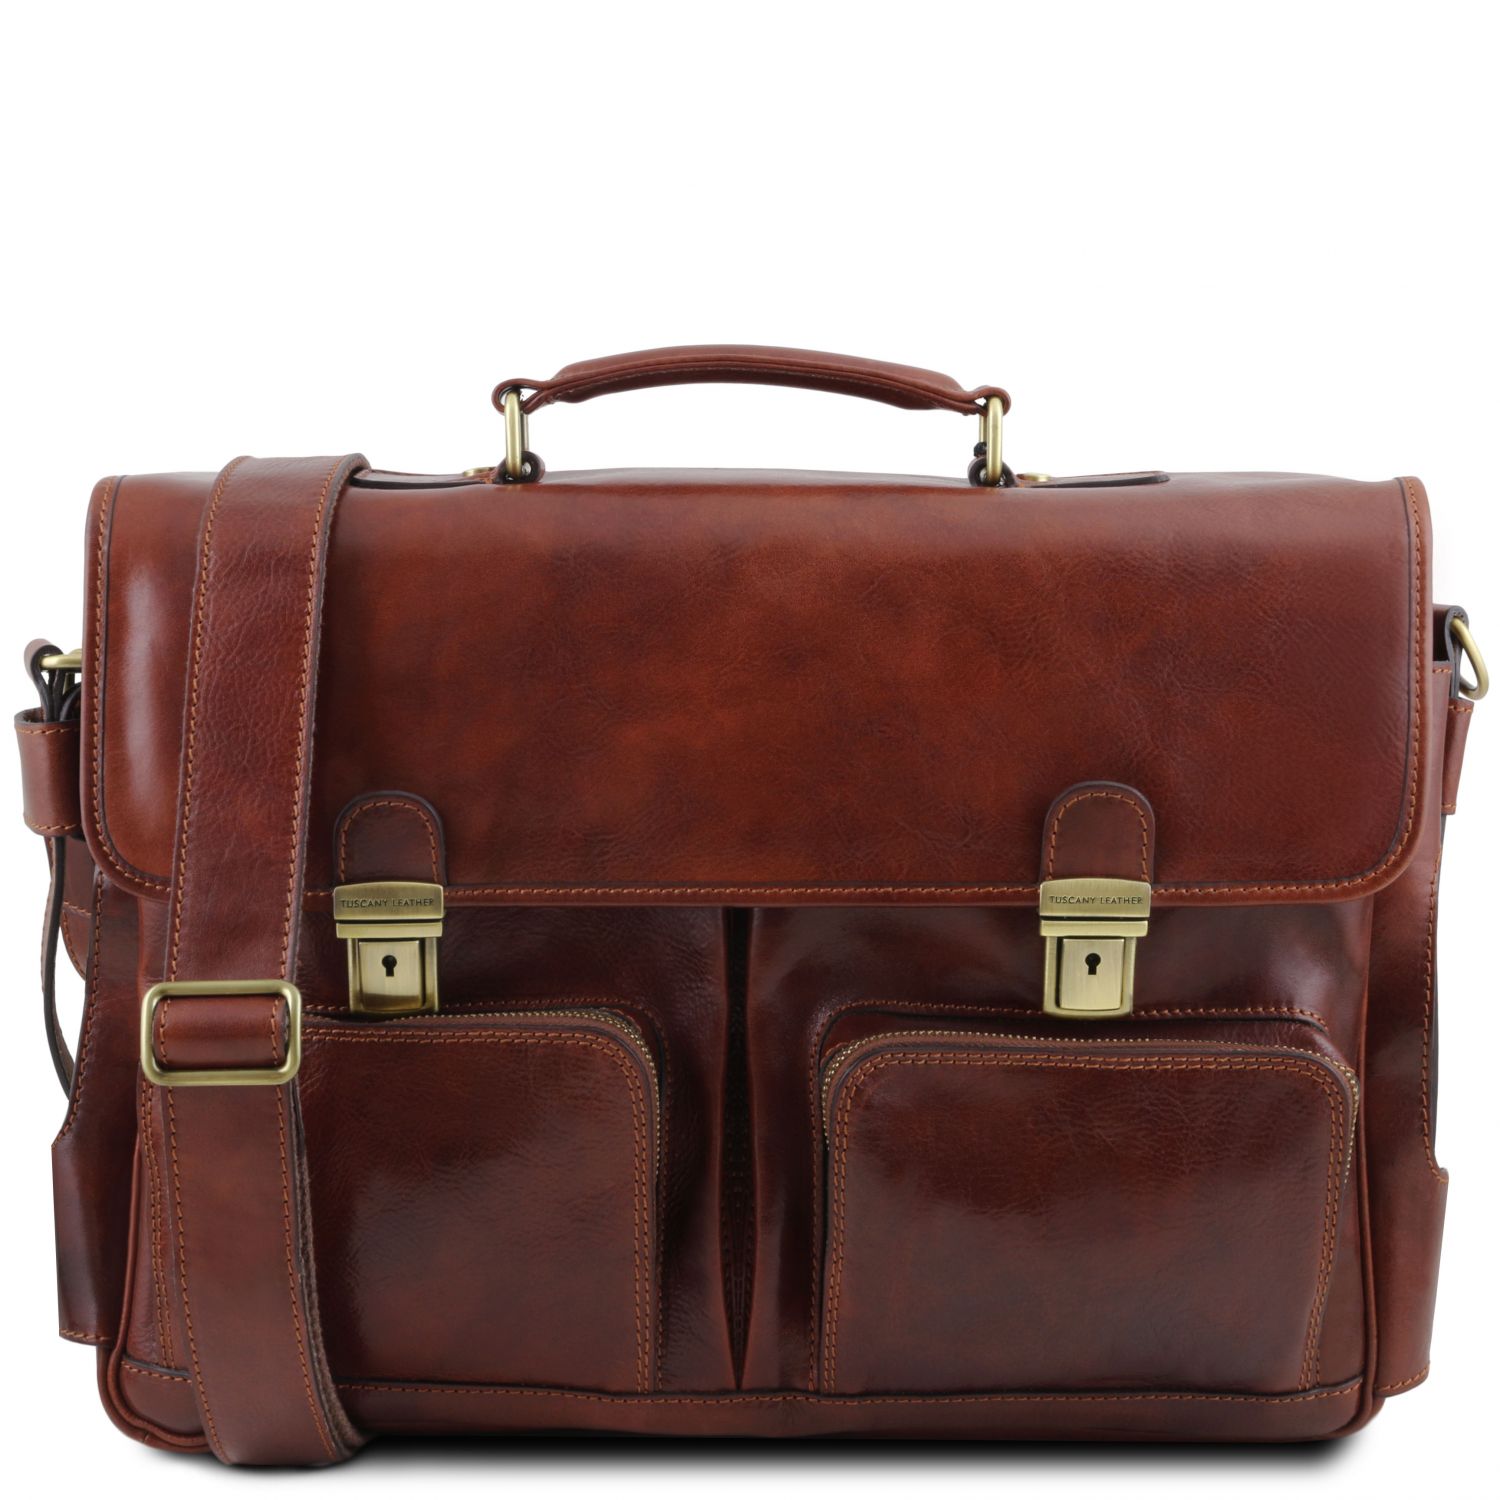 Black Leather Briefcase Laptop Messenger Bags For Men & Women - Office File Folder Bag